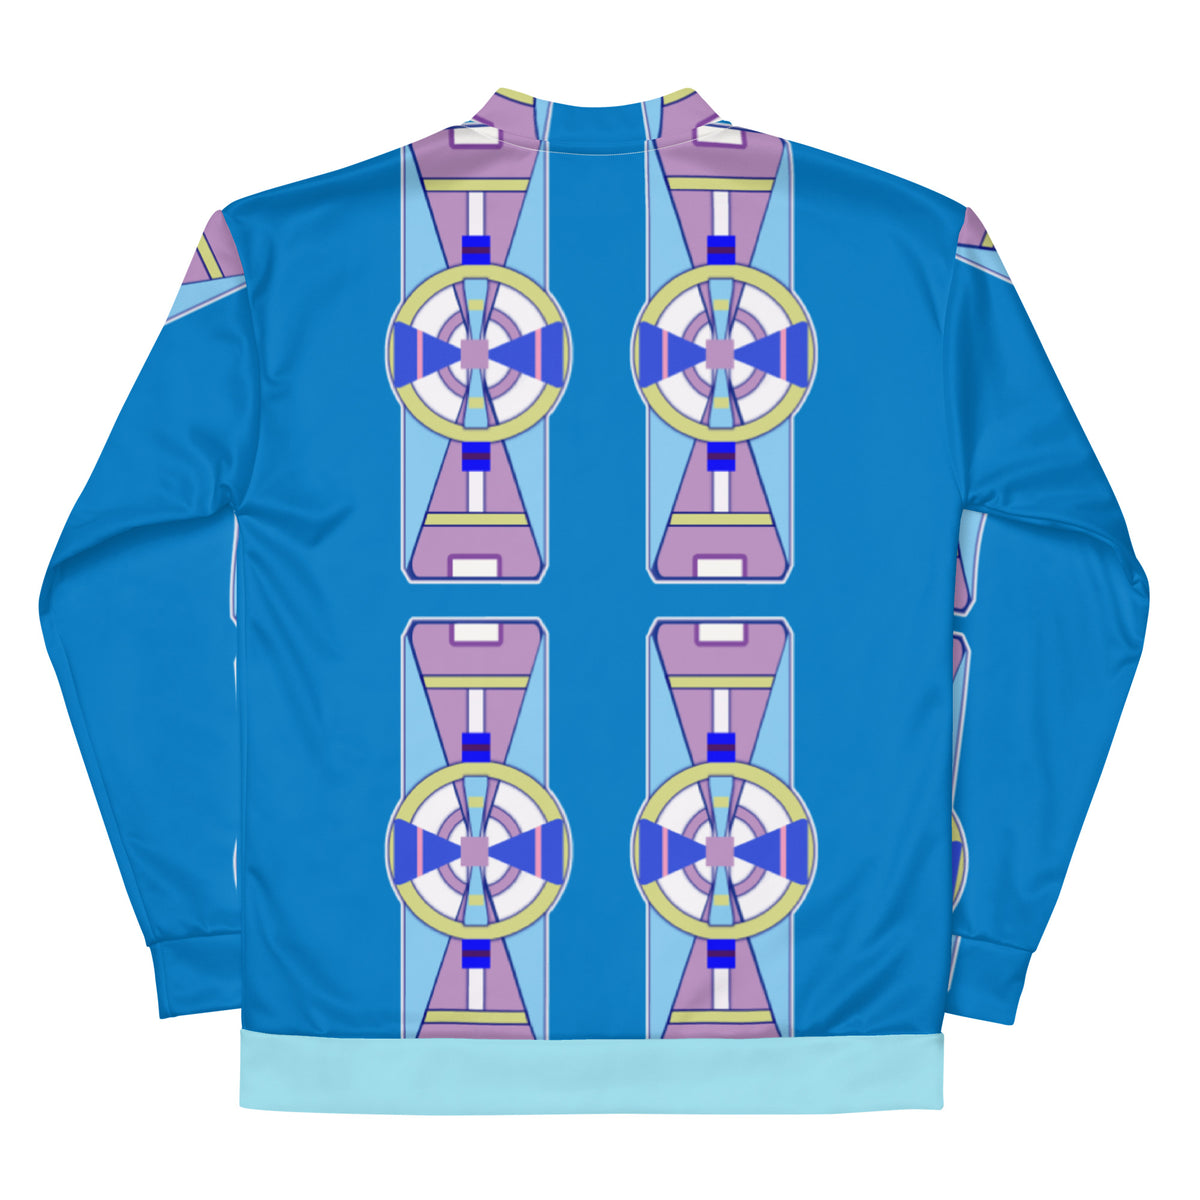 Apsáalooke Champion Unisex Bomber Jacket – Good Medicine Clothing